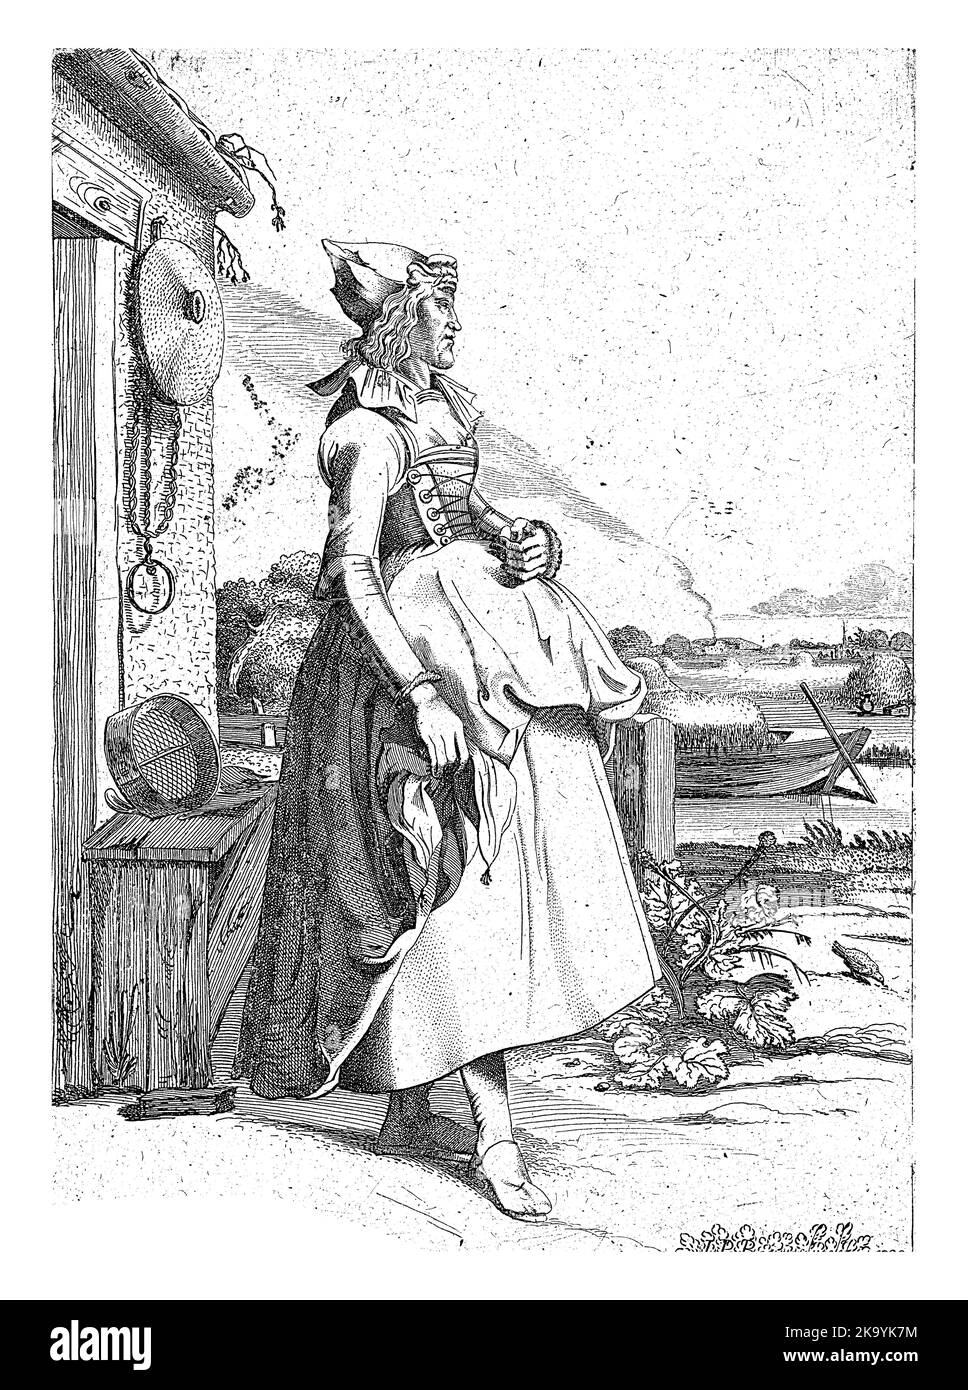 Une jeune femme de Hoorn, vêtue de costume traditionnel, se trouve à côté d'une maison sur le front de mer. Il y a un bateau avec du foin dans le canal. Banque D'Images